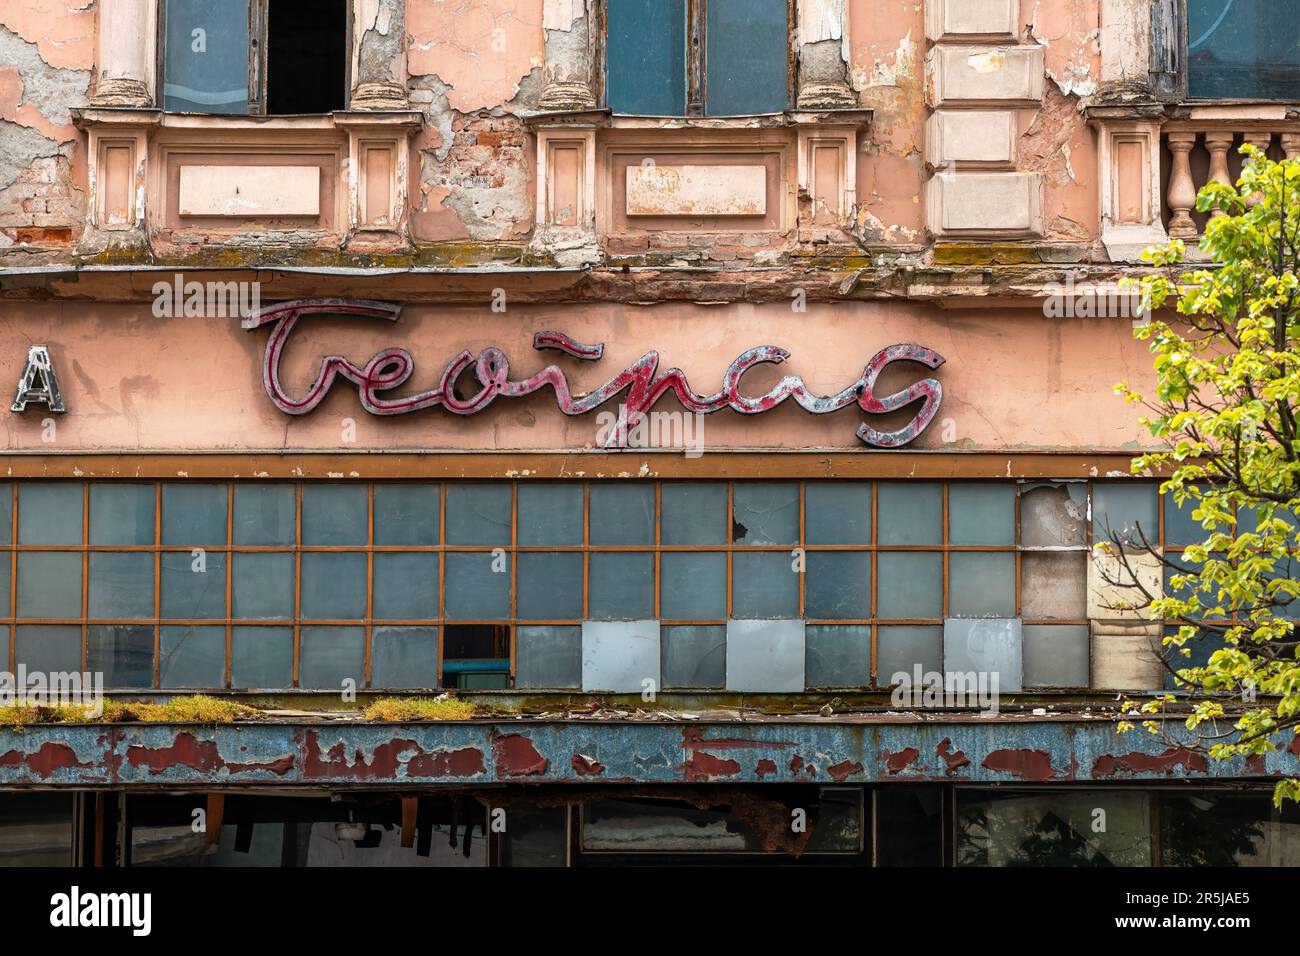 Zrenjanin, Serbie - 29 avril 2023 : bâtiment détruit d'un ancien grand magasin fermé Beograd, célèbre marque de 1980s dans l'ex-Yougoslavie Banque D'Images